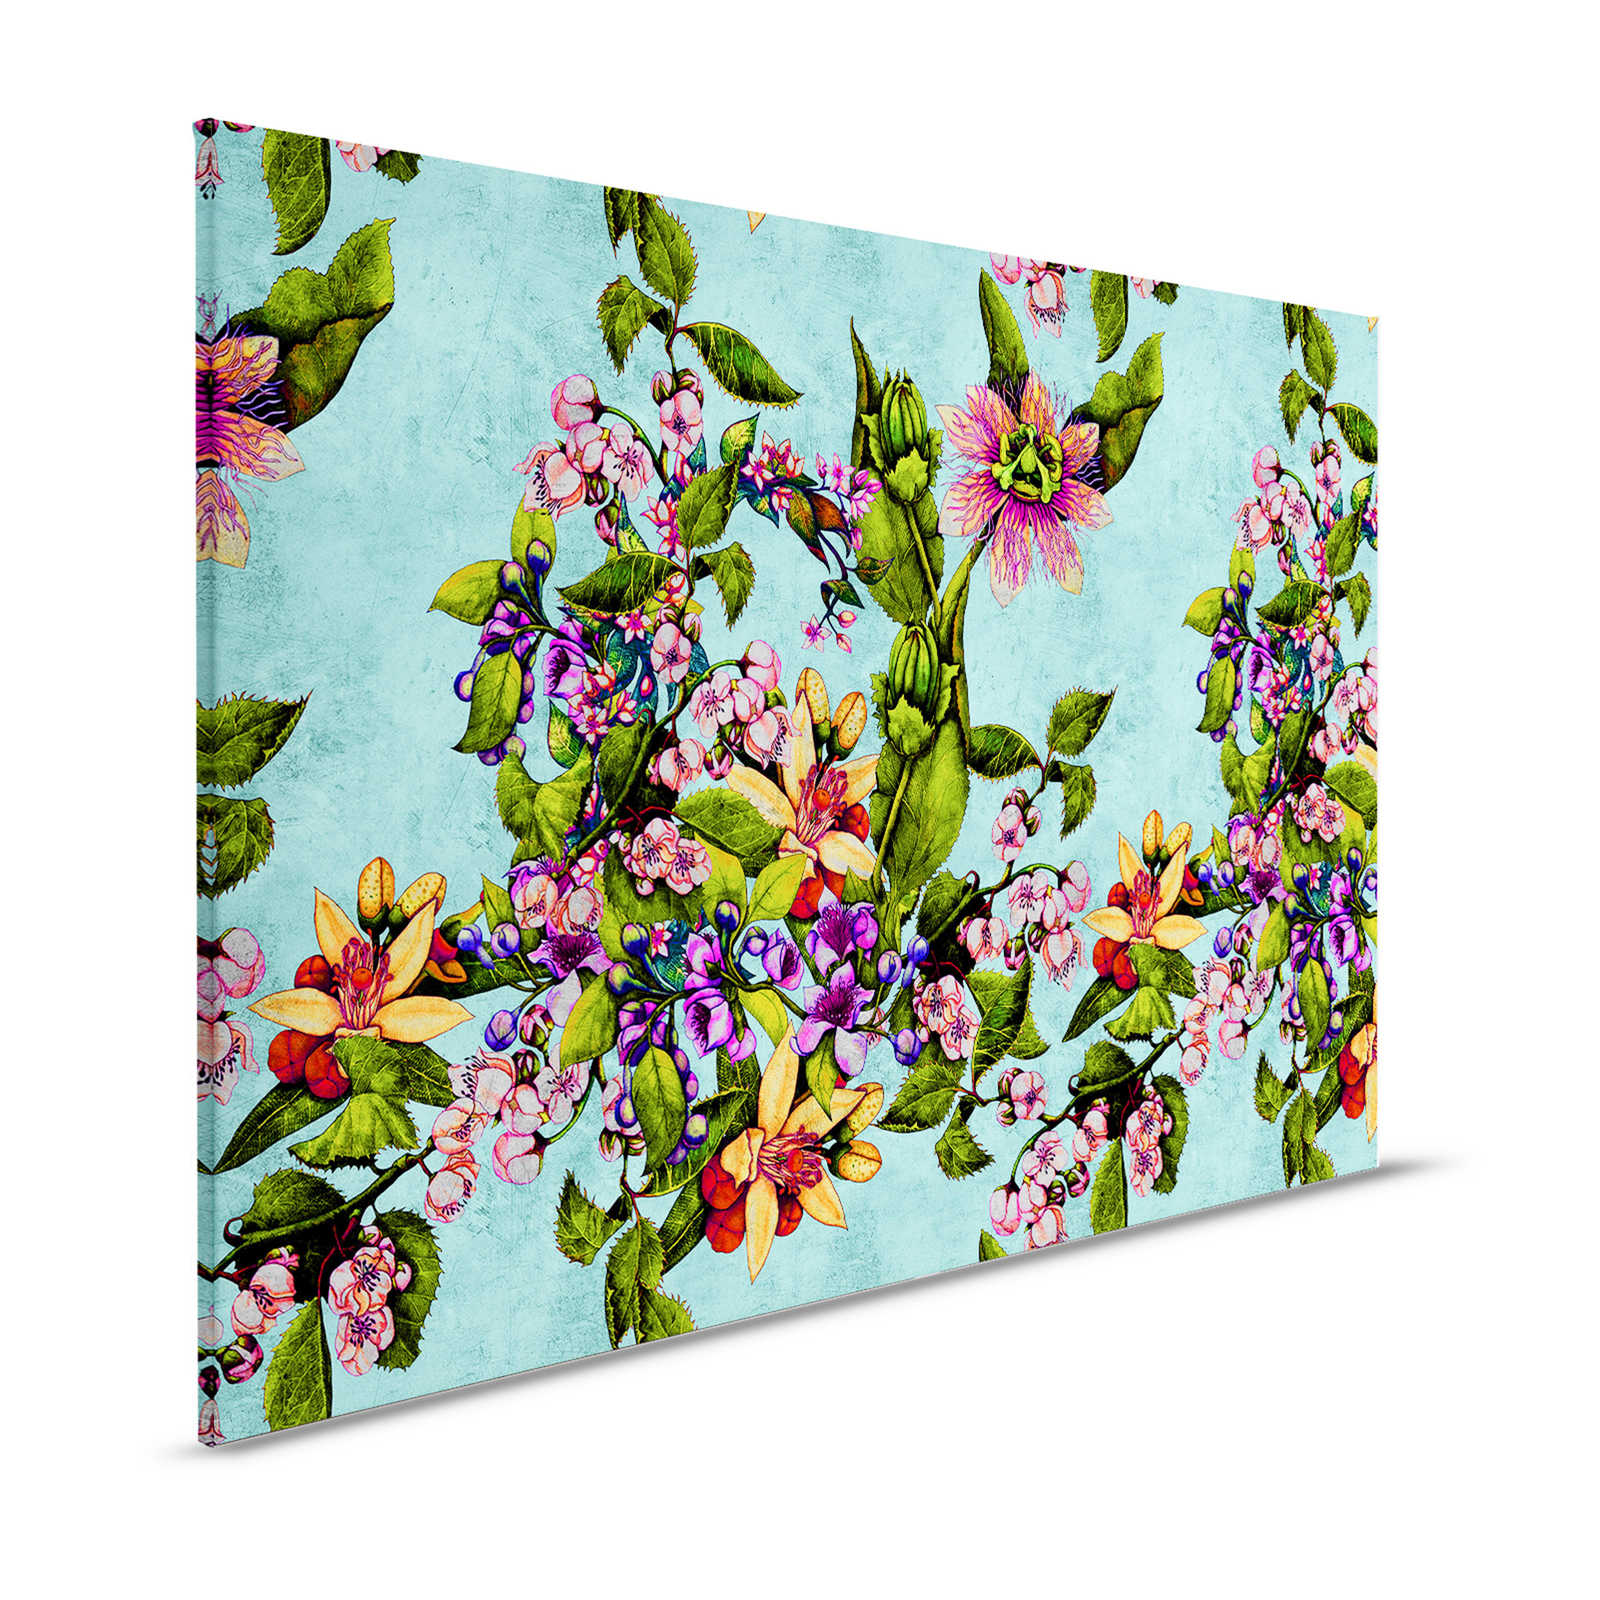 Tropical Passion 1 - Toile tropicale avec motif de fleurs - 1,20 m x 0,80 m
